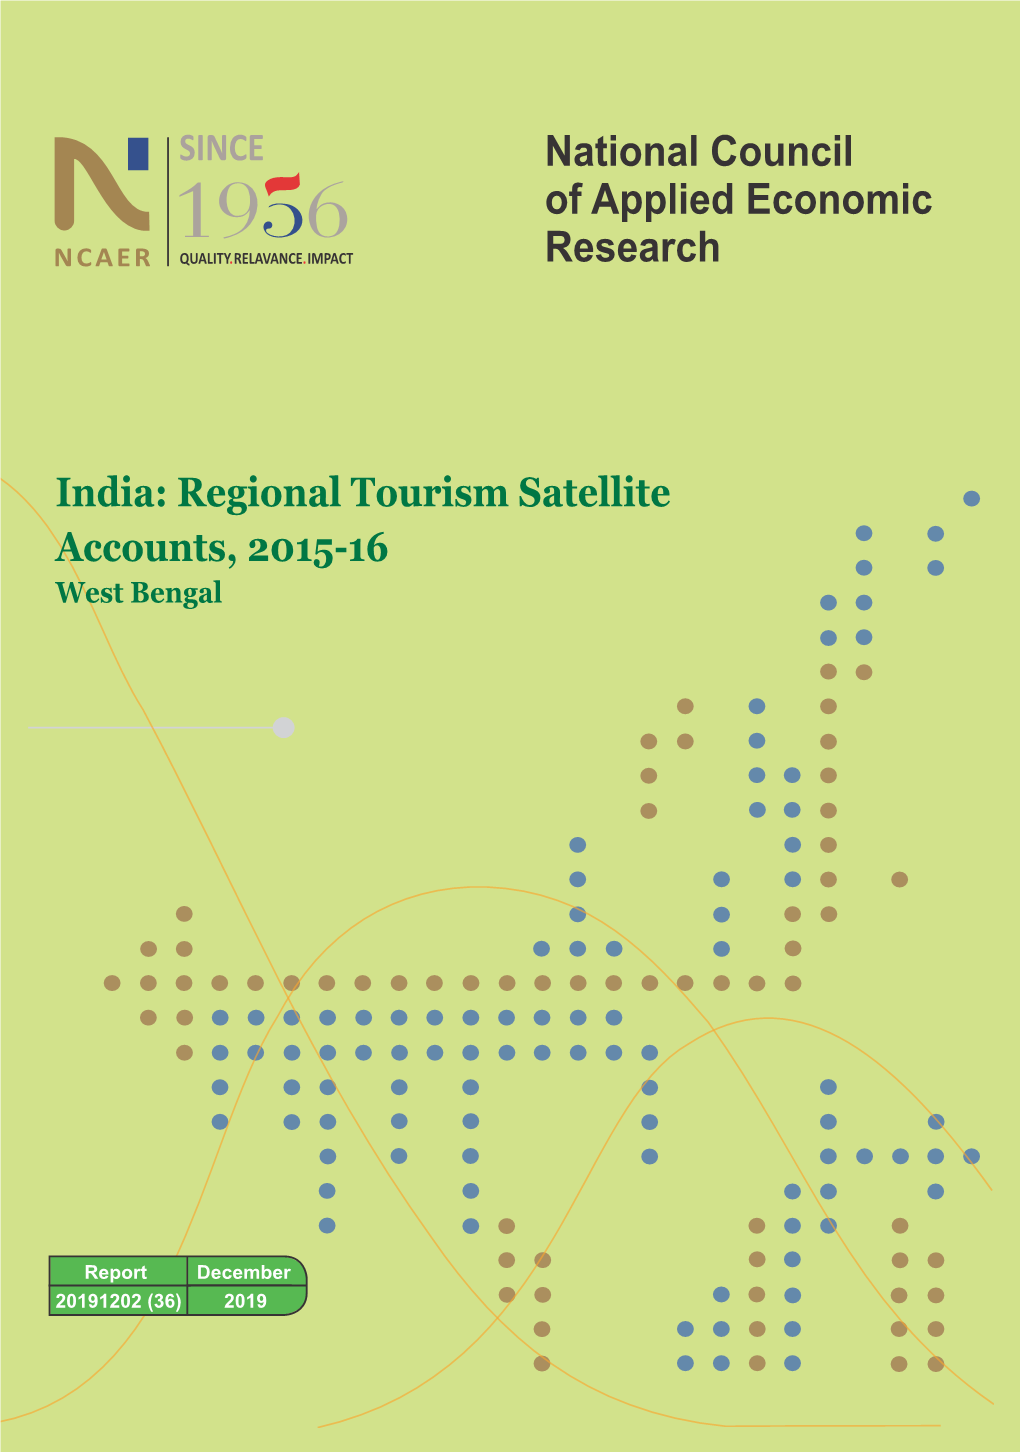 Regional Tourism Satellite Account, West Bengal – 2015-16